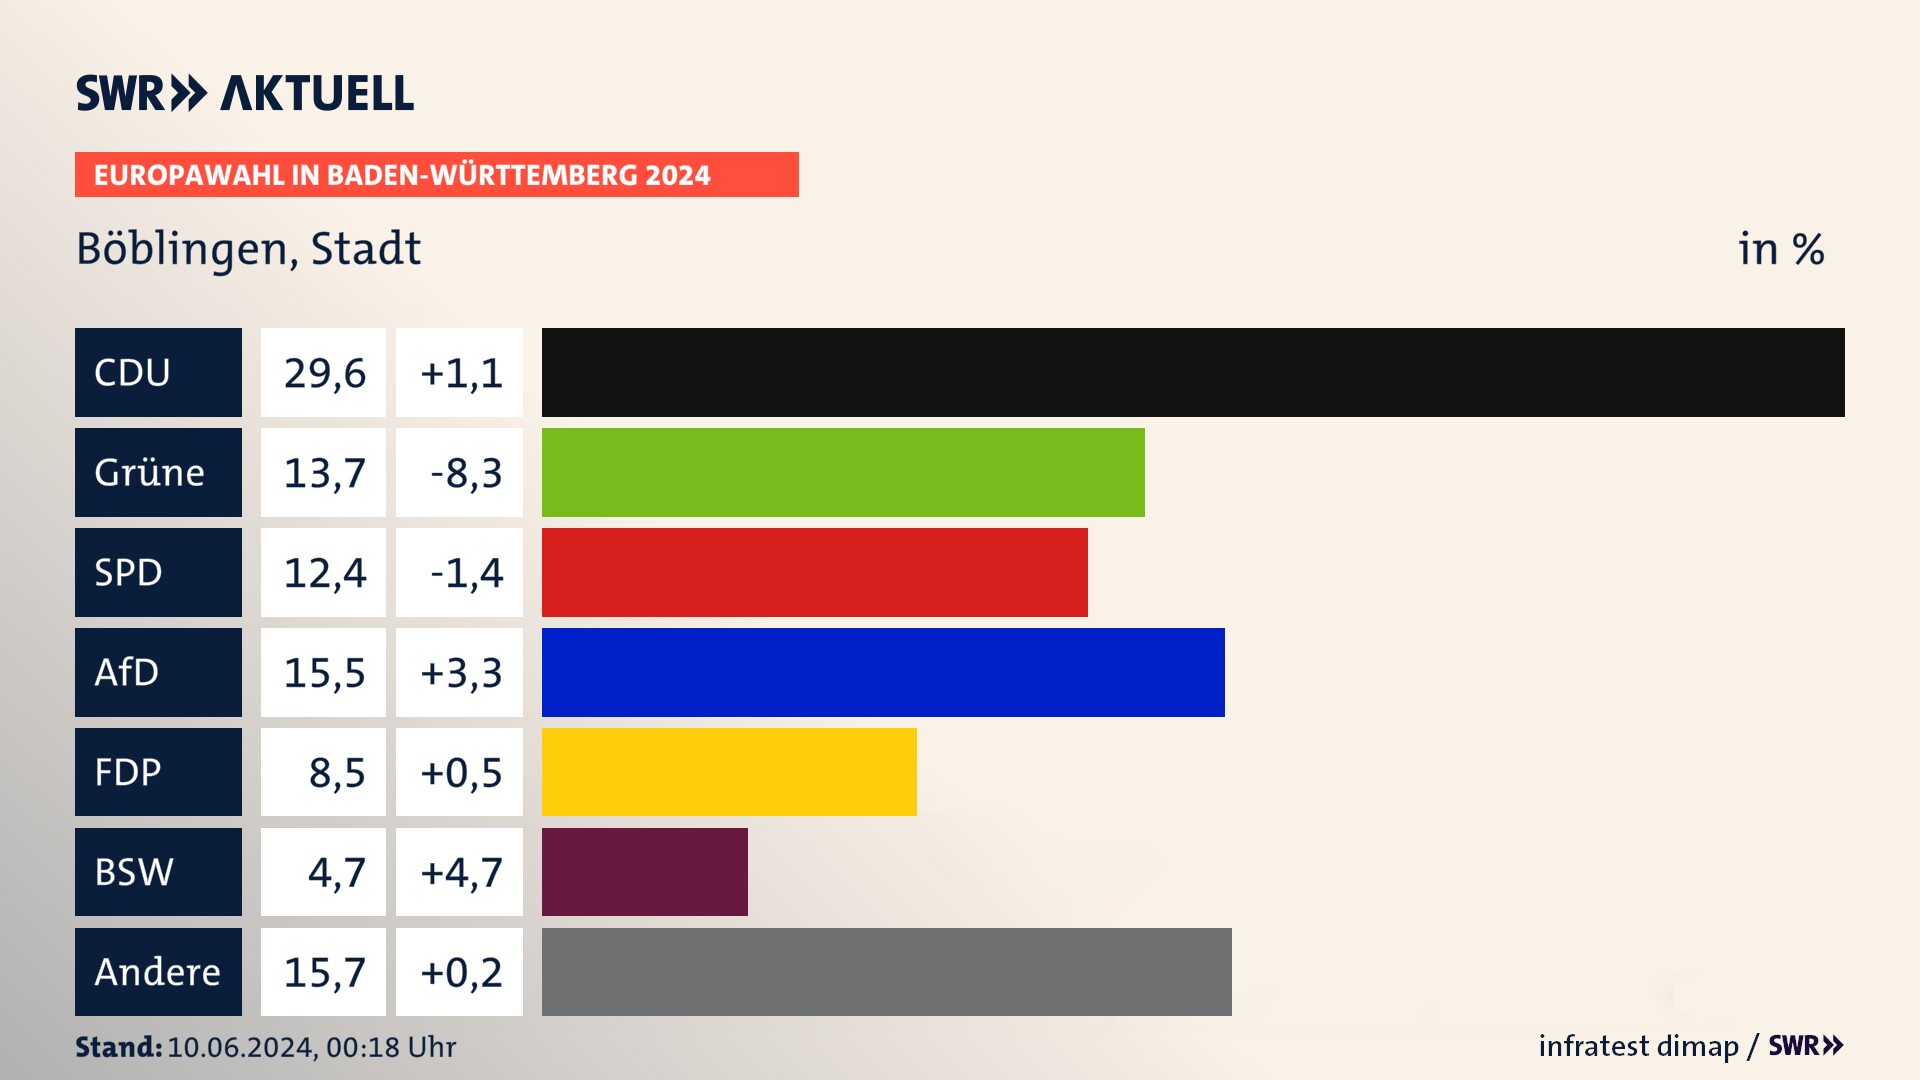 Europawahl 2024 Endergebnis Zweitstimme für Böblingen, Stadt. In Böblingen, Stadt erzielt die CDU 29,6 Prozent der gültigen  Stimmen. Die Grünen landen bei 13,7 Prozent. Die SPD erreicht 12,4 Prozent. Die AfD kommt auf 15,5 Prozent. Die FDP landet bei 8,5 Prozent. Die 2019 nicht angetretene Partei BSW bekommt 4,7 Prozent.